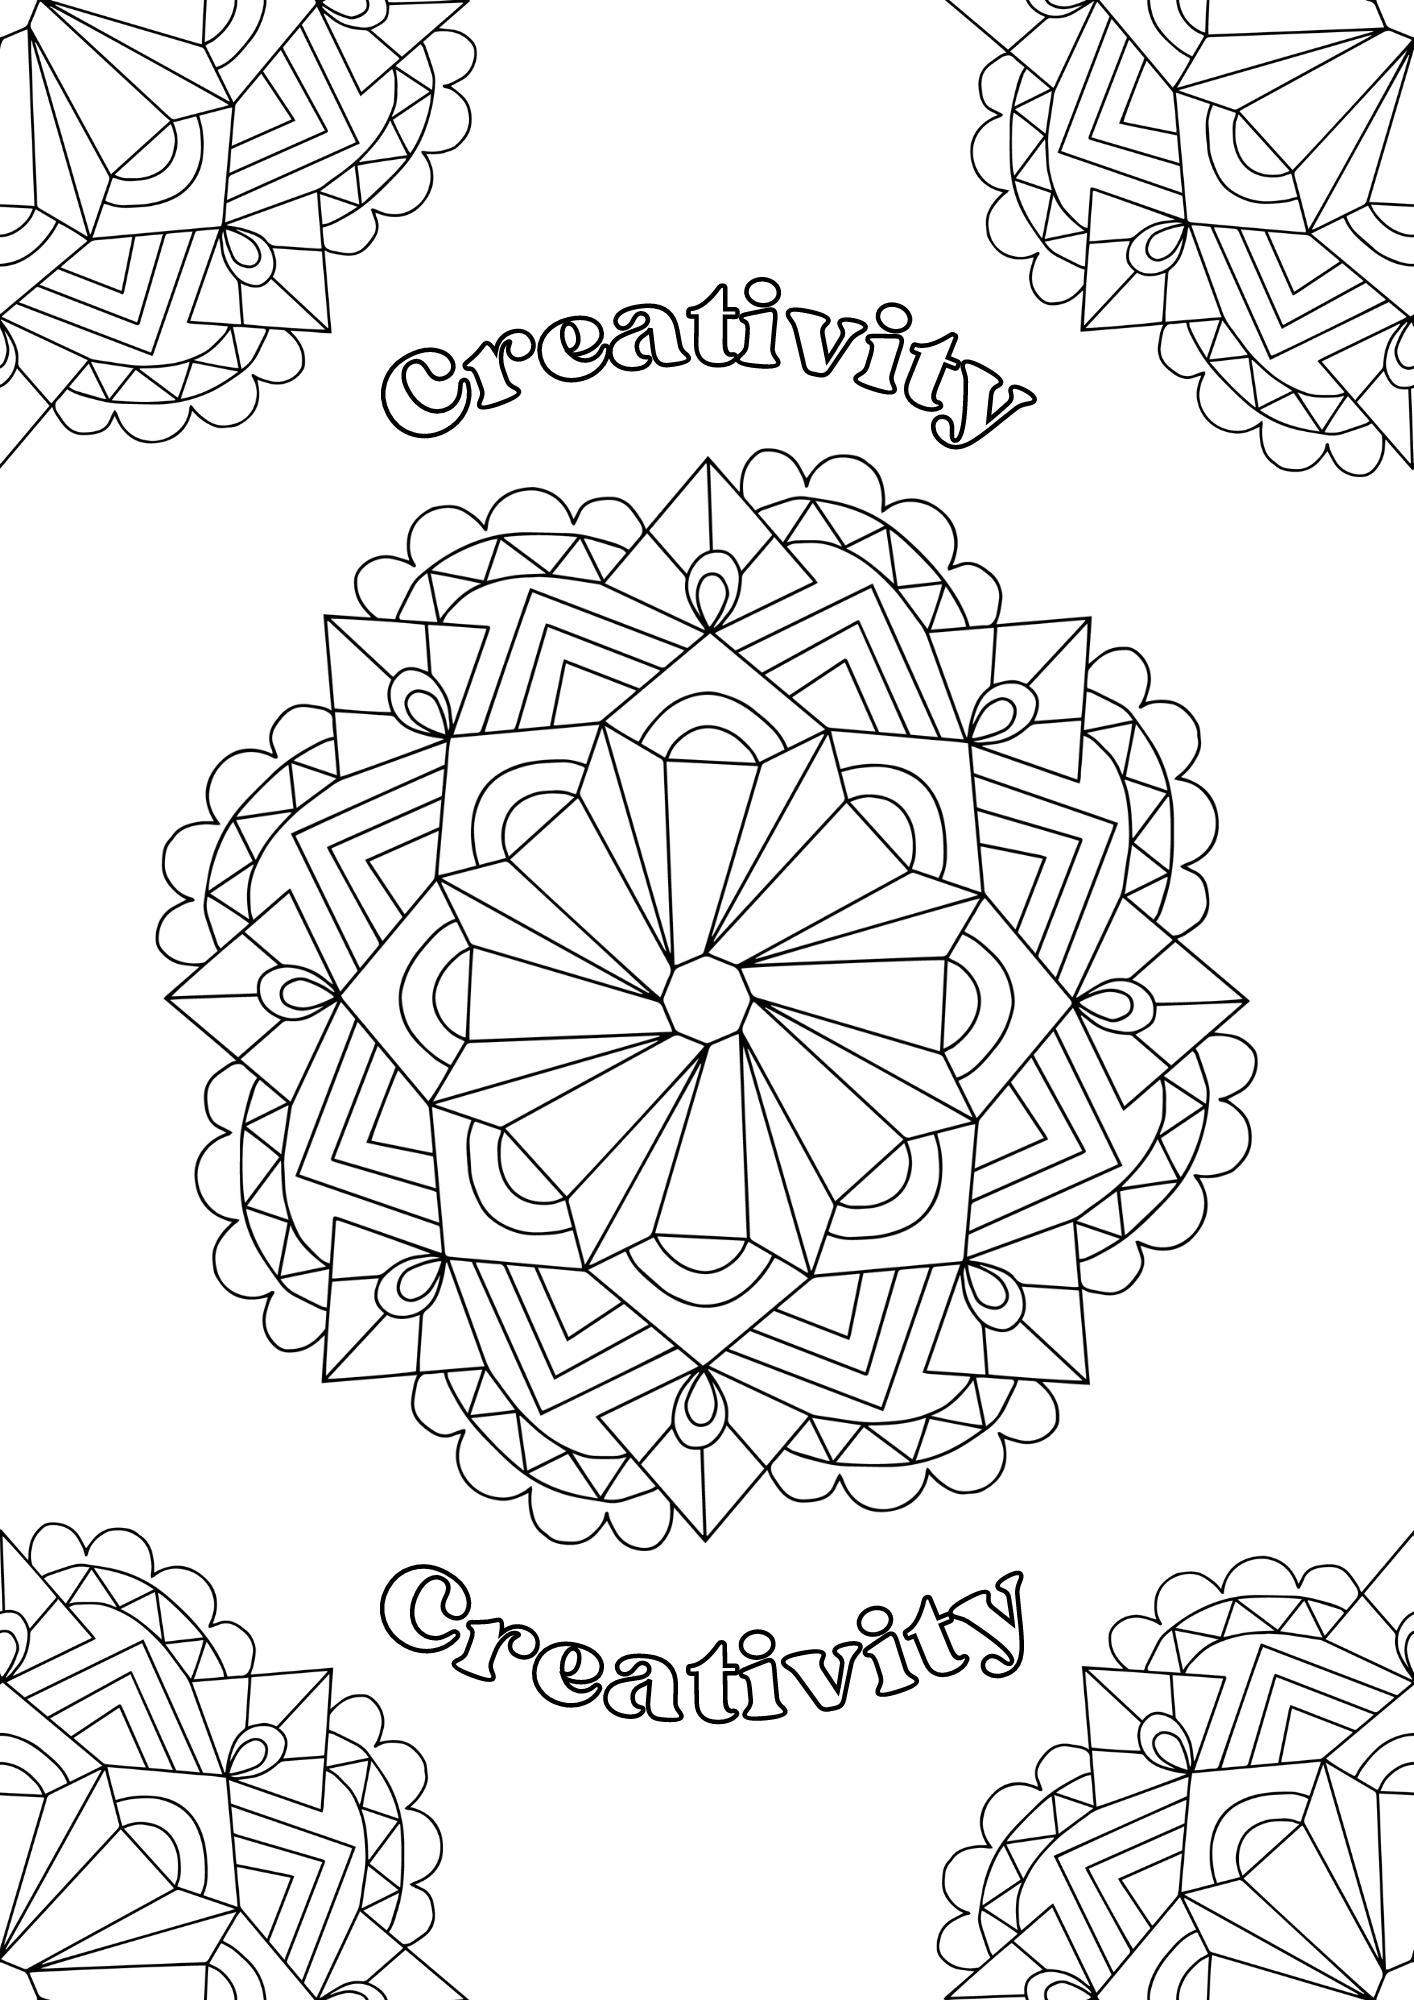 Creativity Mandala Coloring Sheet